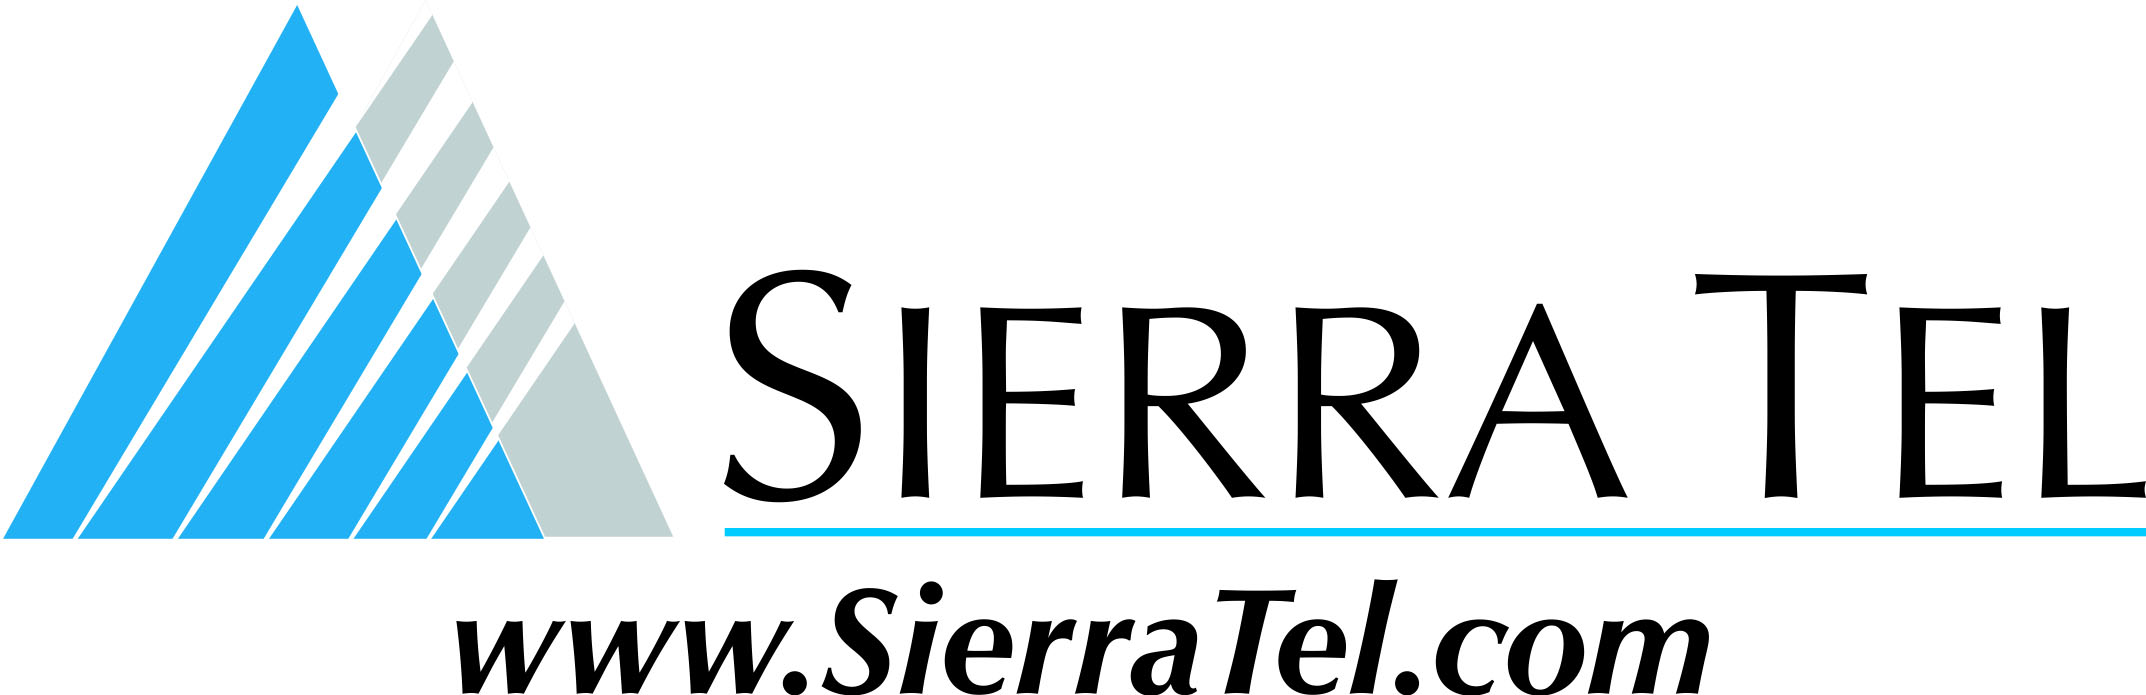 Sierra Tel Family url only.jpg